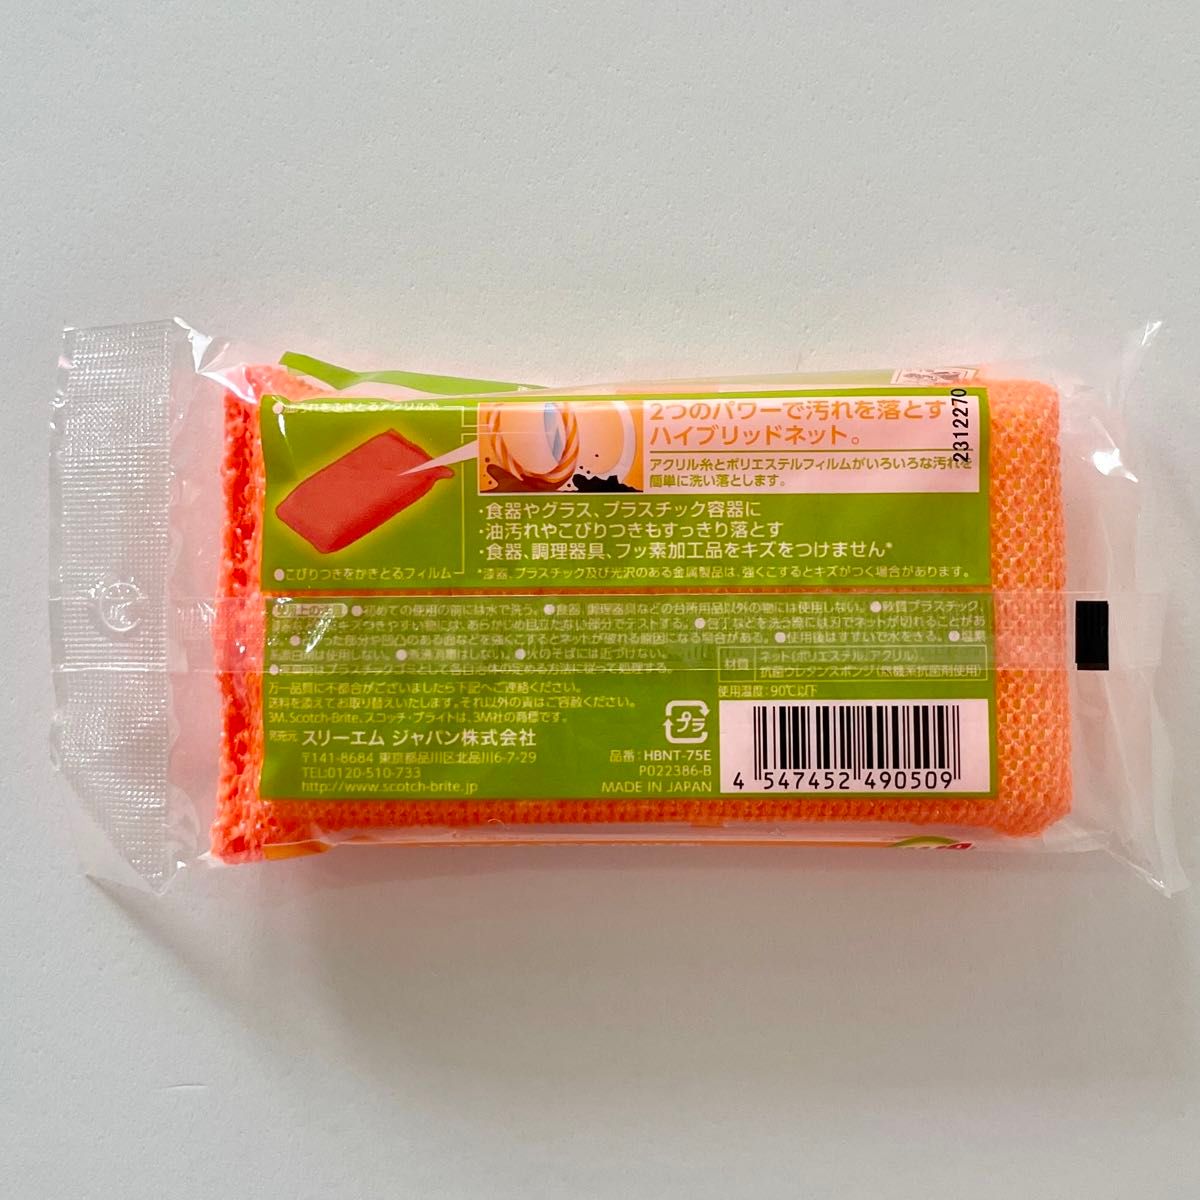 【スコッチ・ブライト】ハイブリッドネットスポンジ(オレンジ) ×4セット